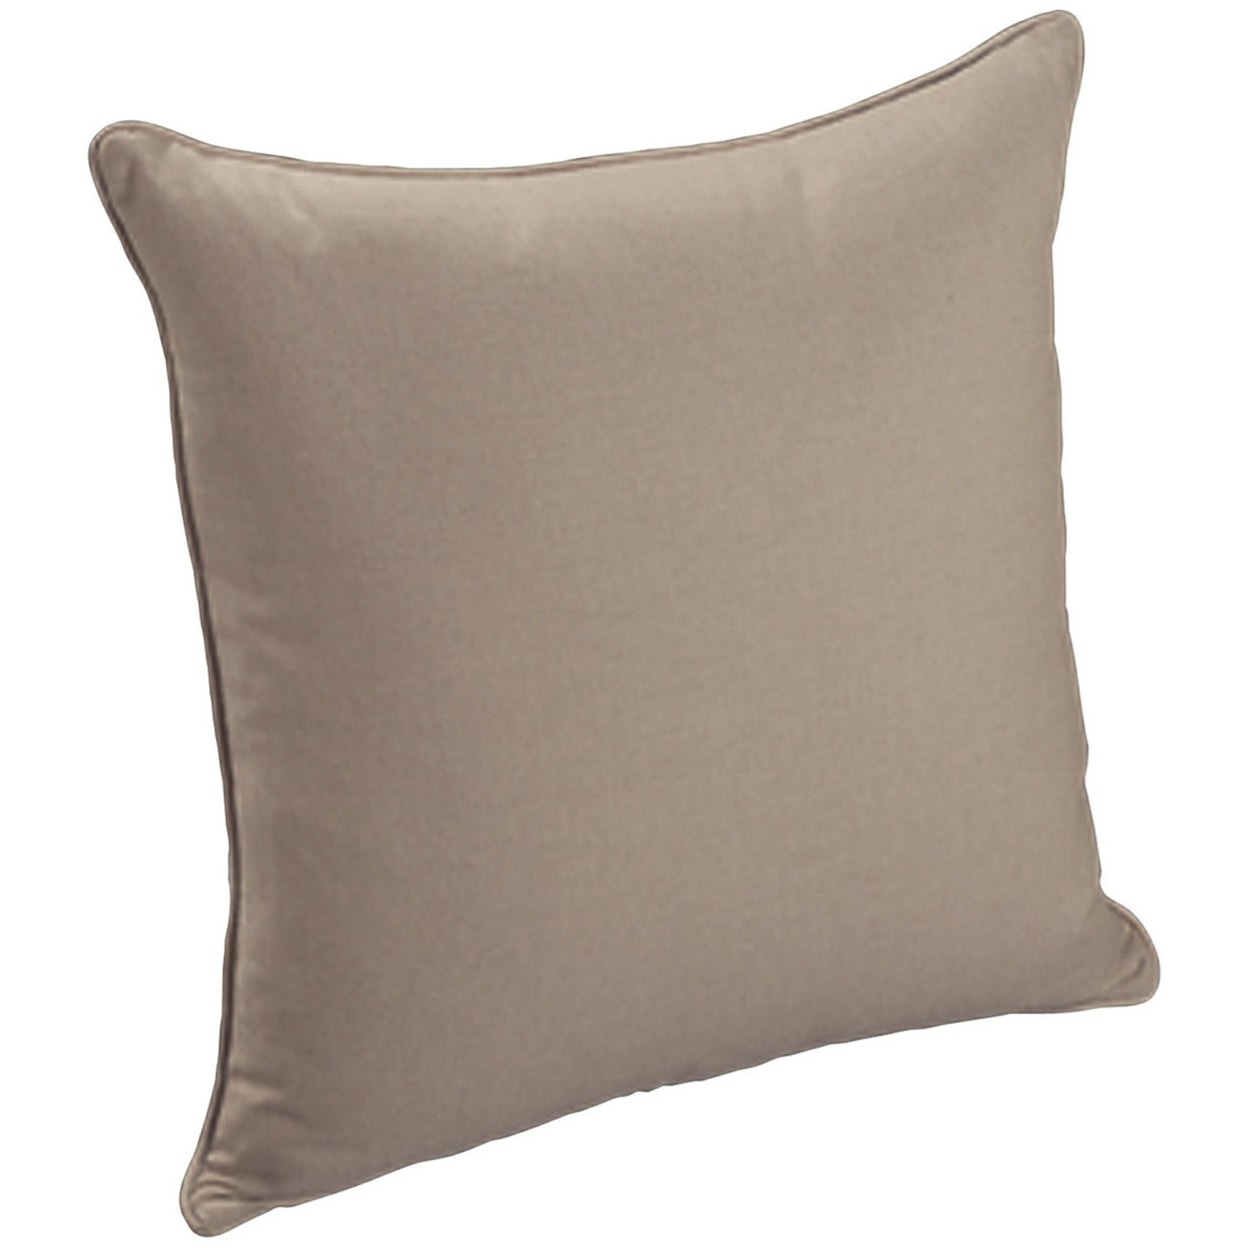 Bernhardt Throw Pillows Throw Pillow